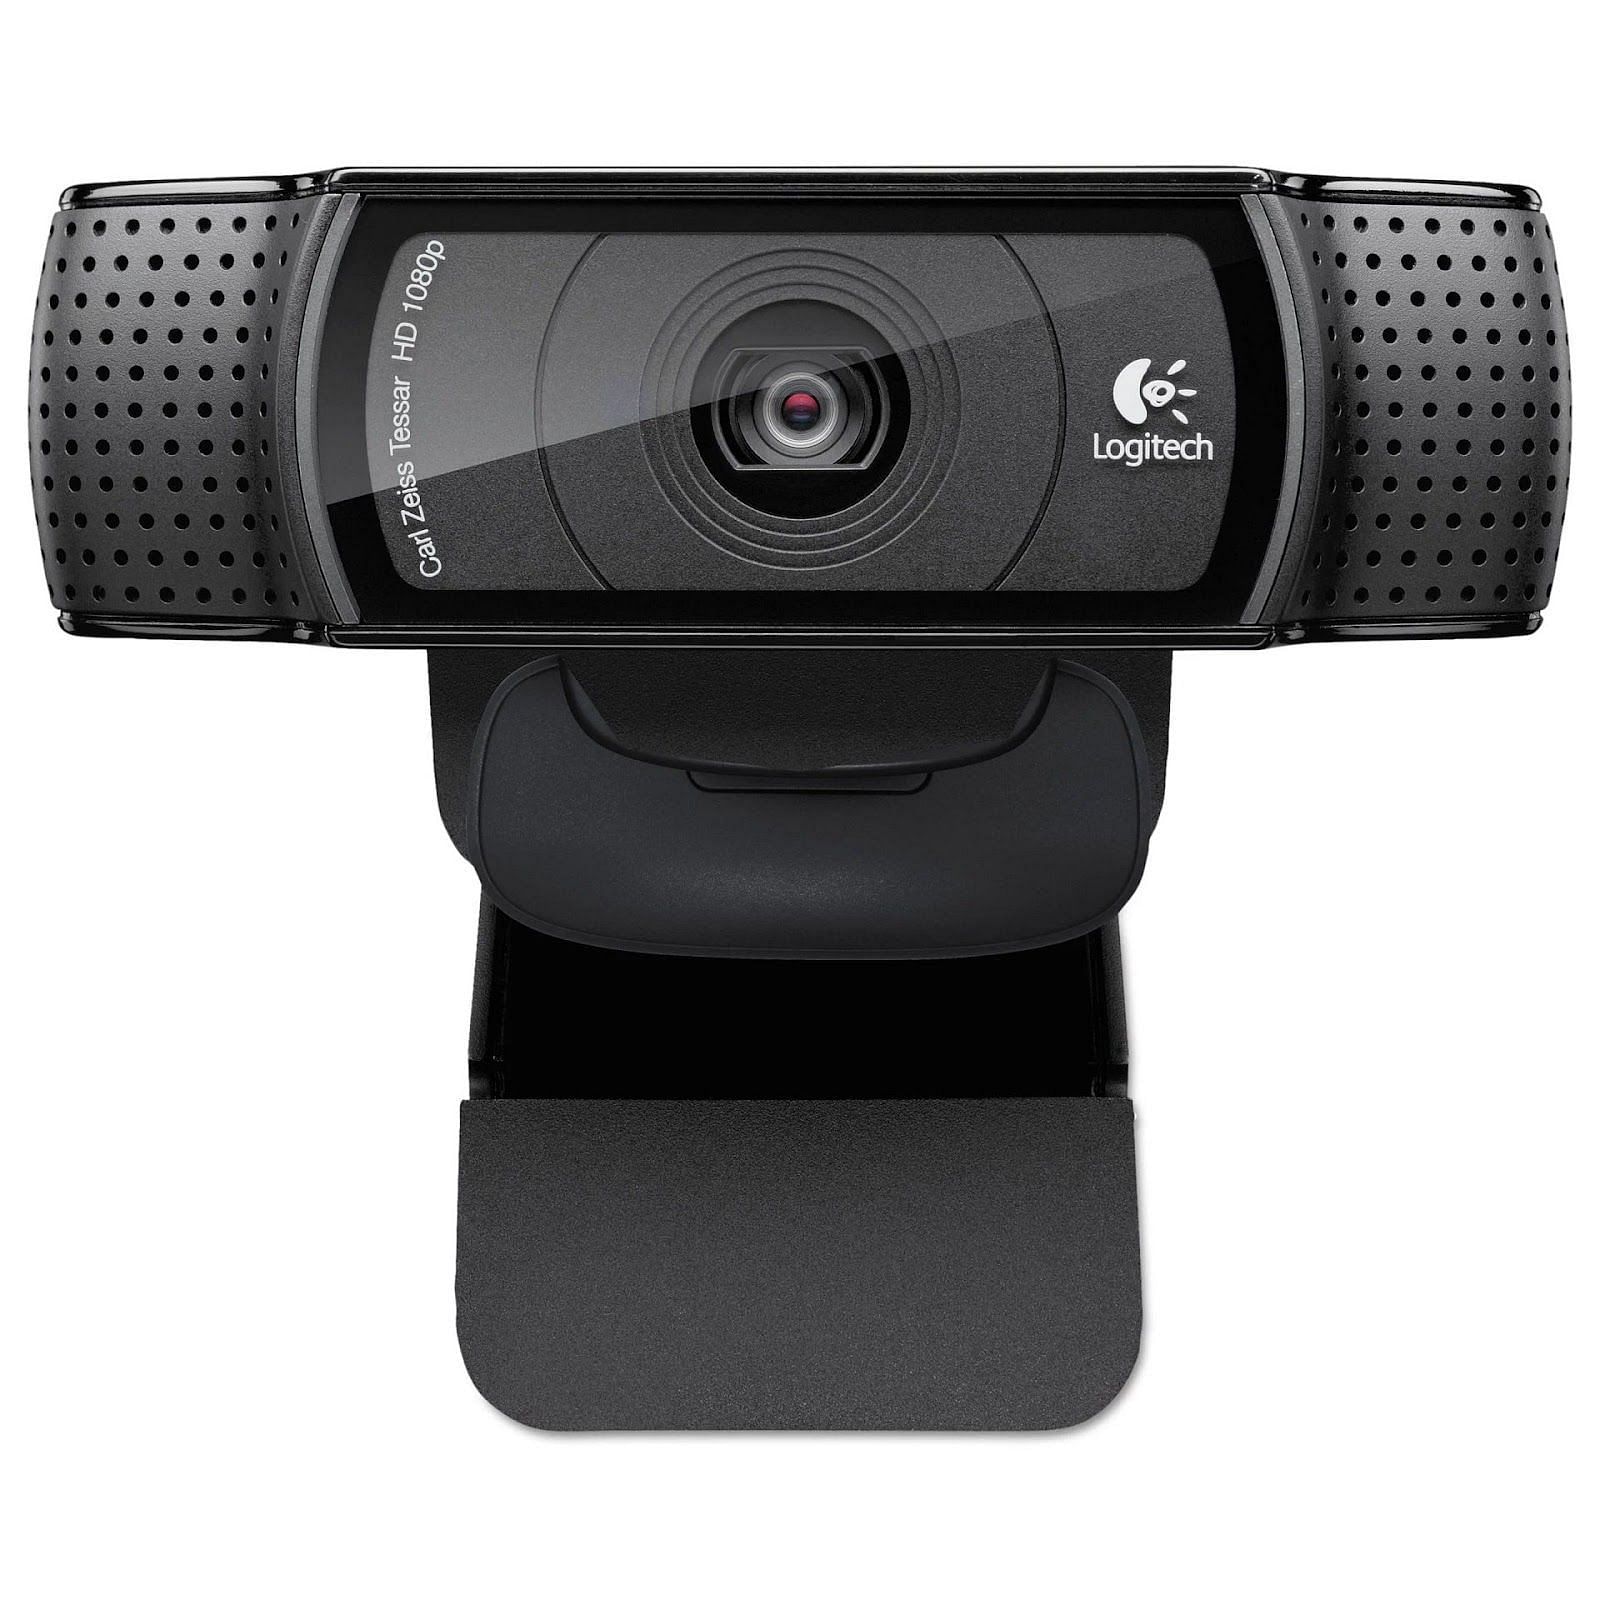 Unboxing the Logitech C920 HD Pro Webcam - element14 Community